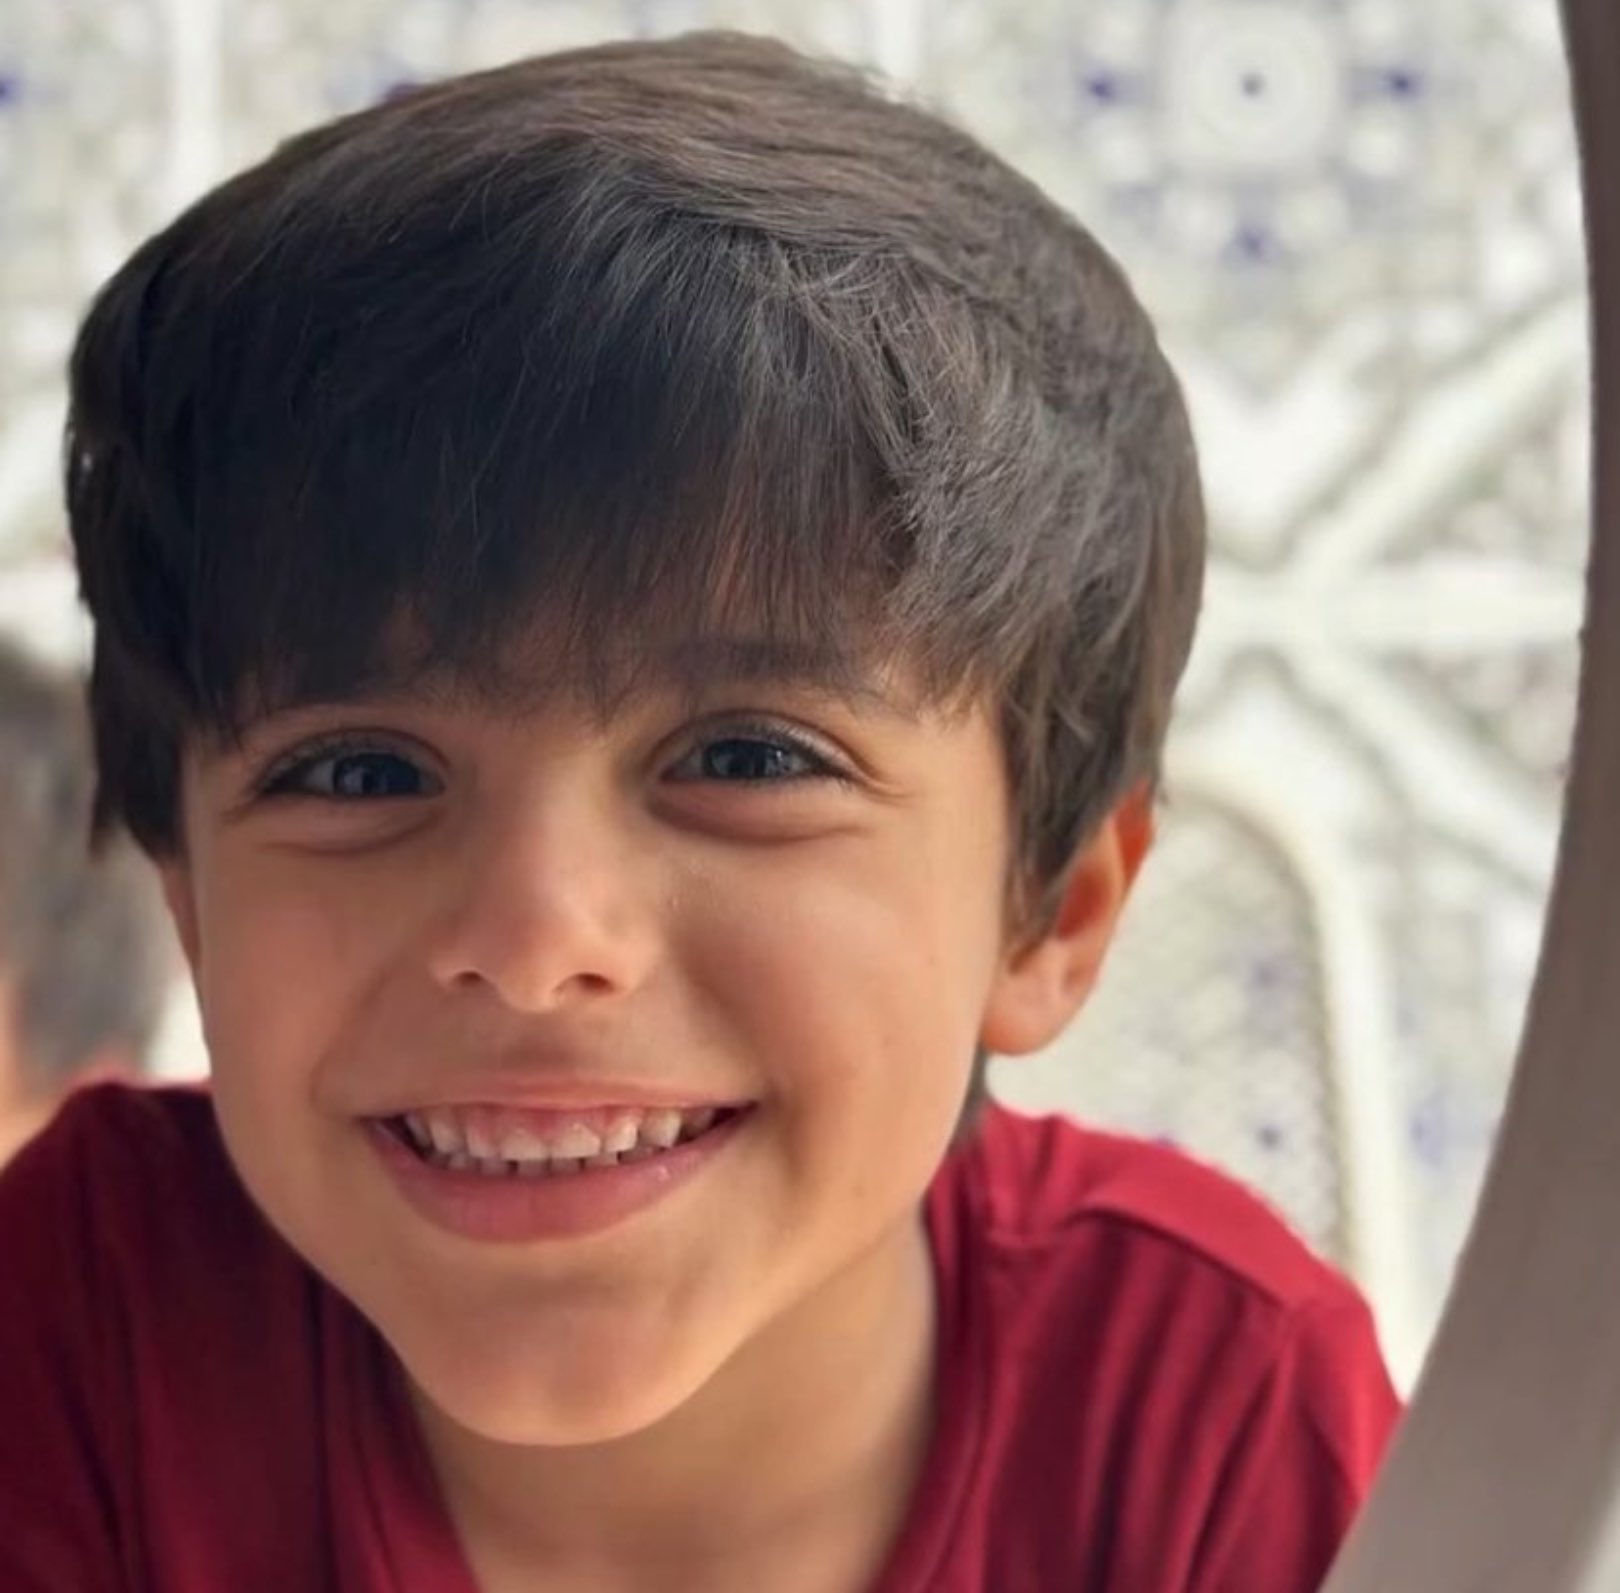 "أنقذوا سليمان".. حملة واسعة على مواقع التواصل لإنقاذ طفل عماني من الموت